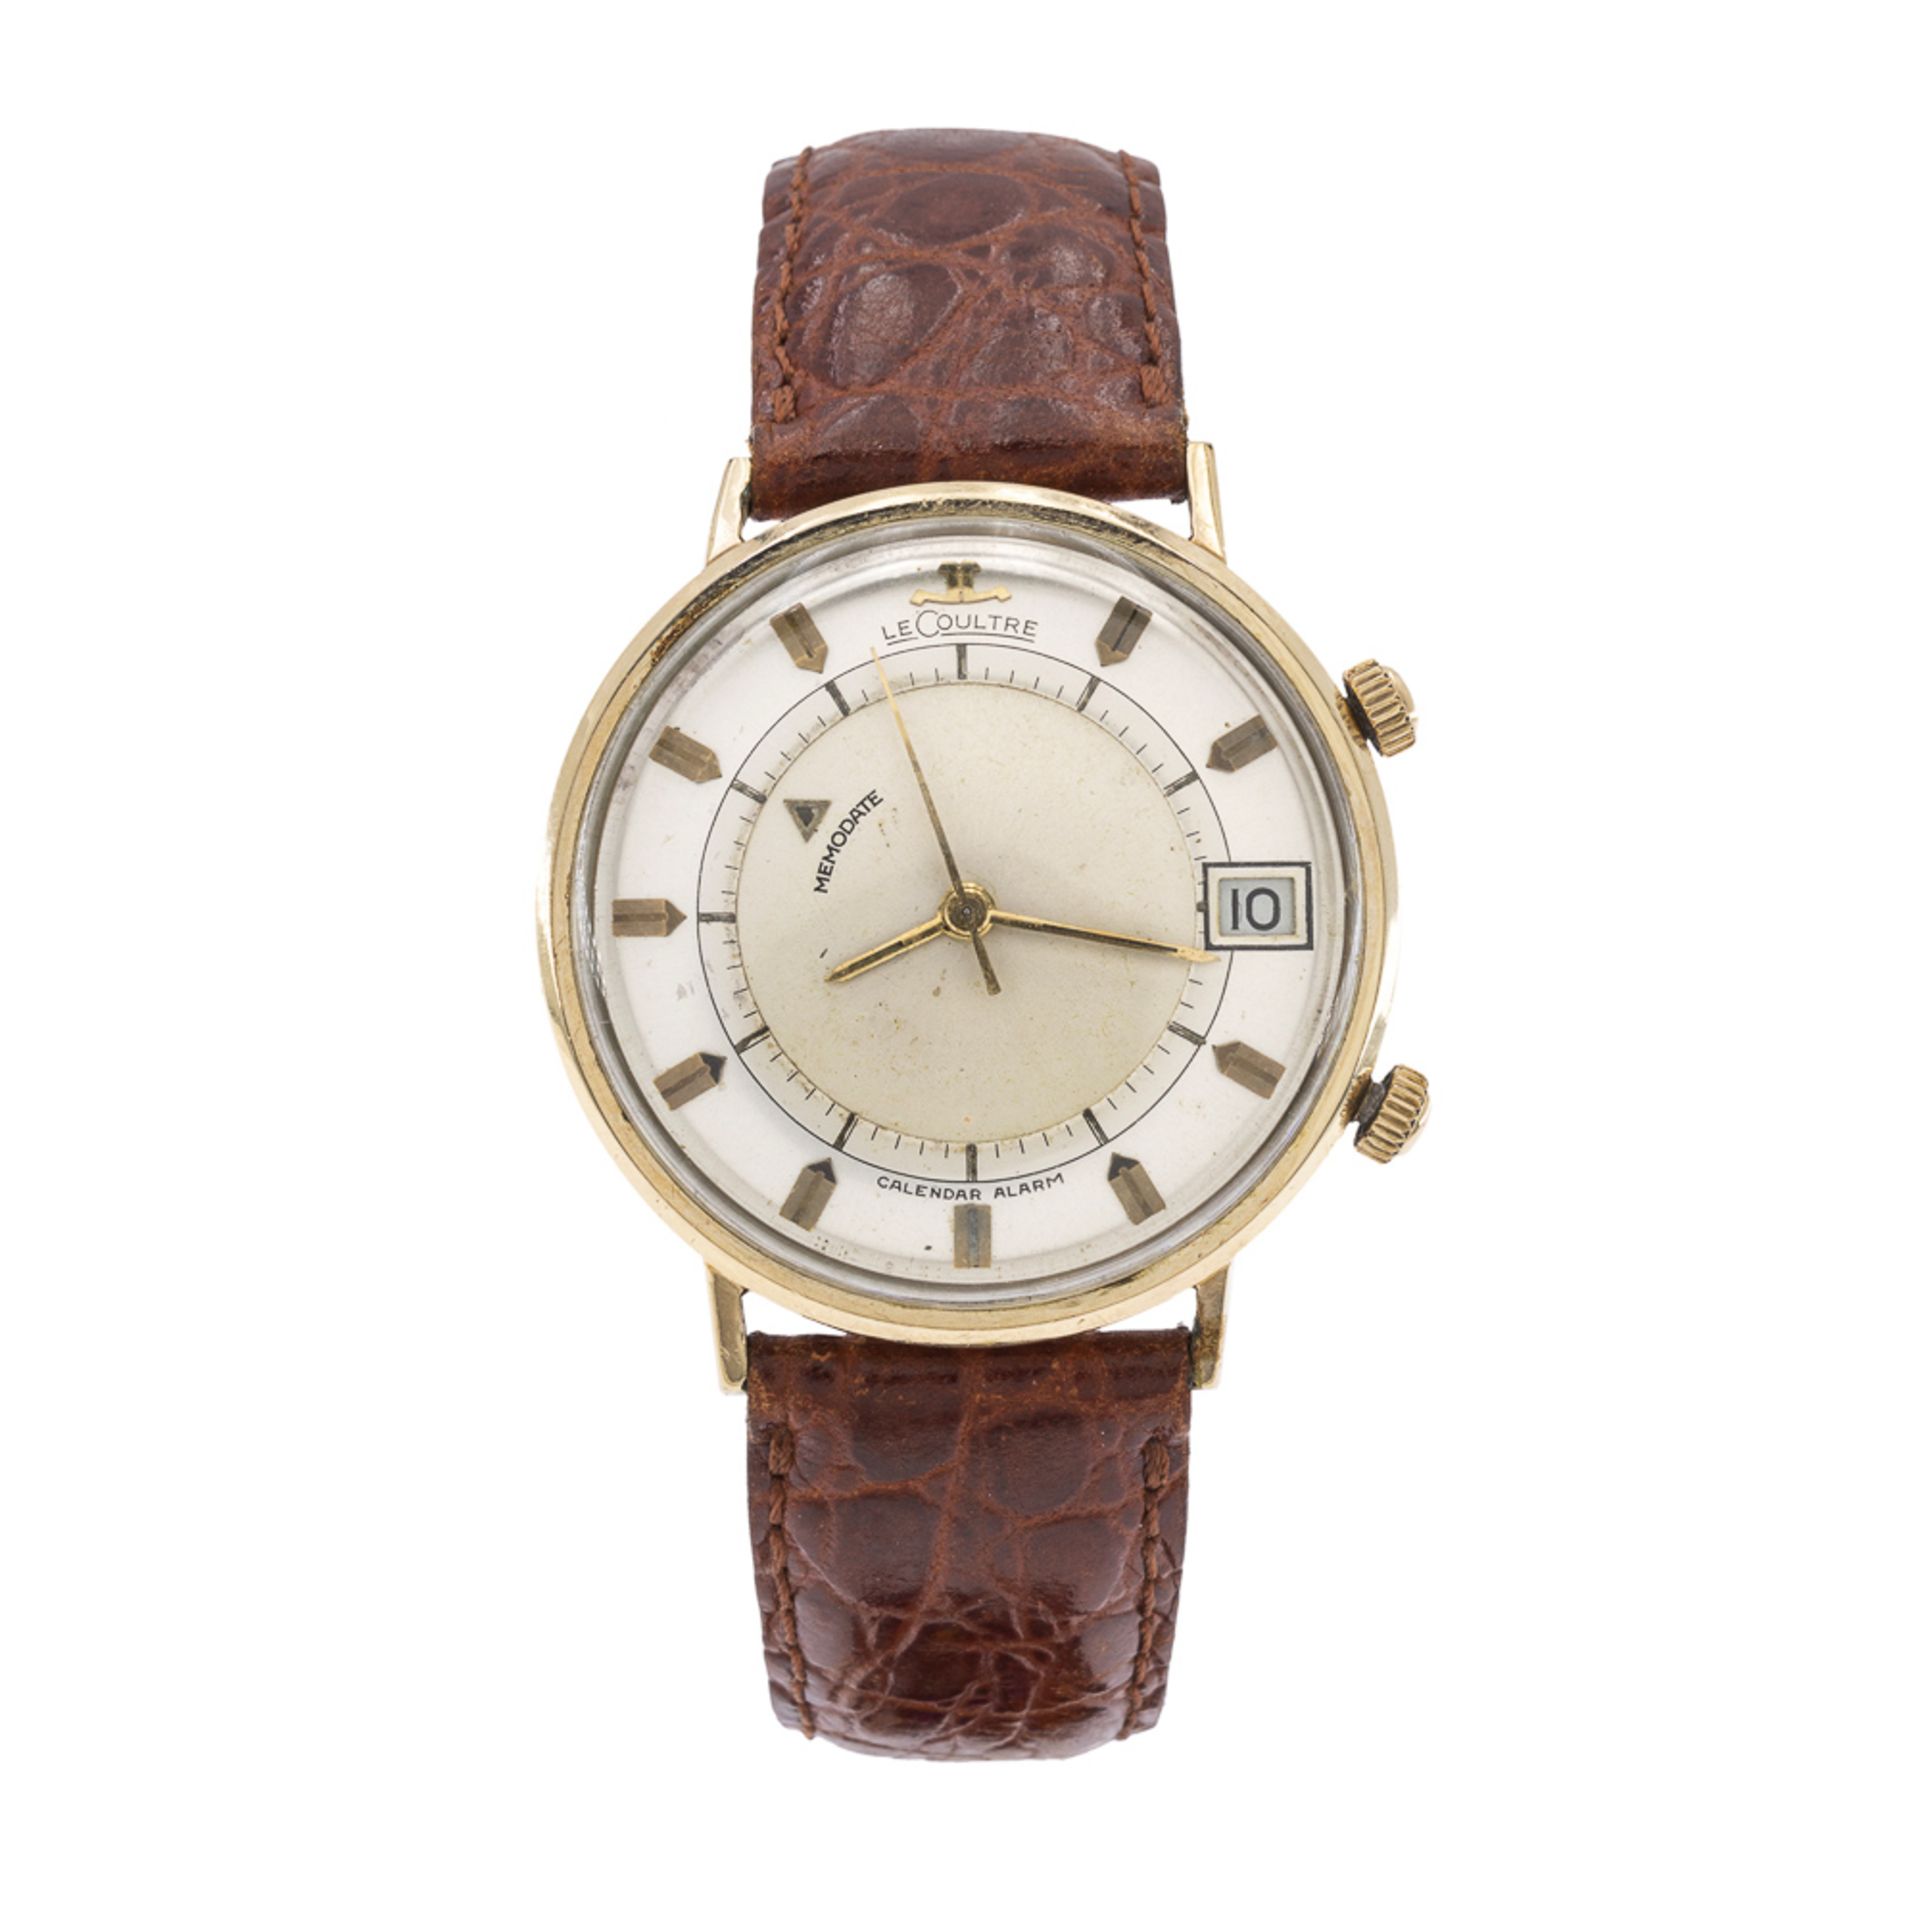 Jager Le Coultre Memodate Alarm clock vintage wristwatch